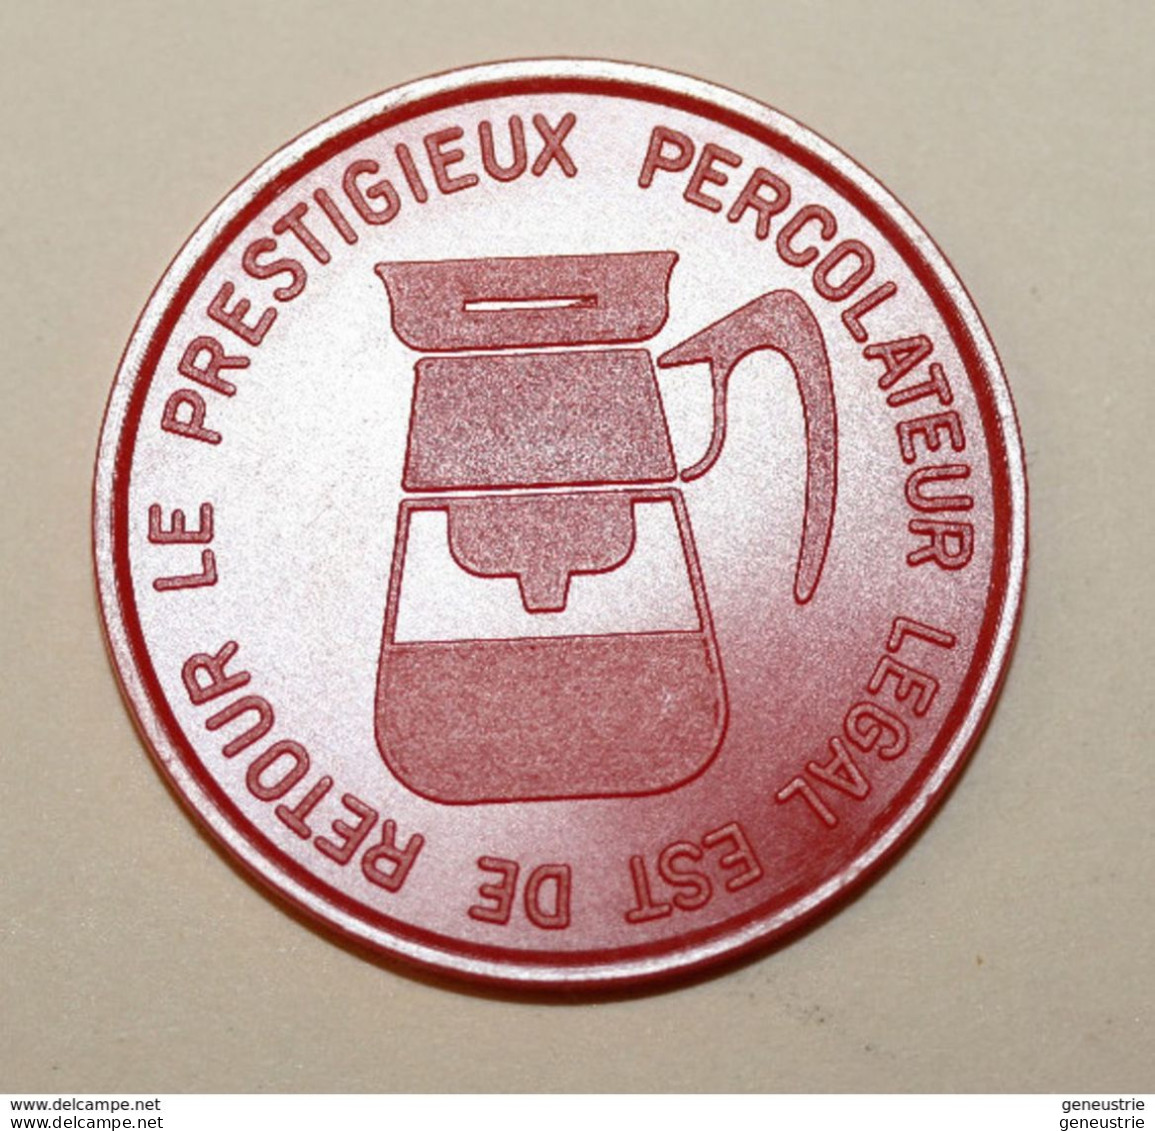 Jeton De Nécessité Publicitaire De Café "Percolateur Legal" CoffeeToken - Monetary / Of Necessity